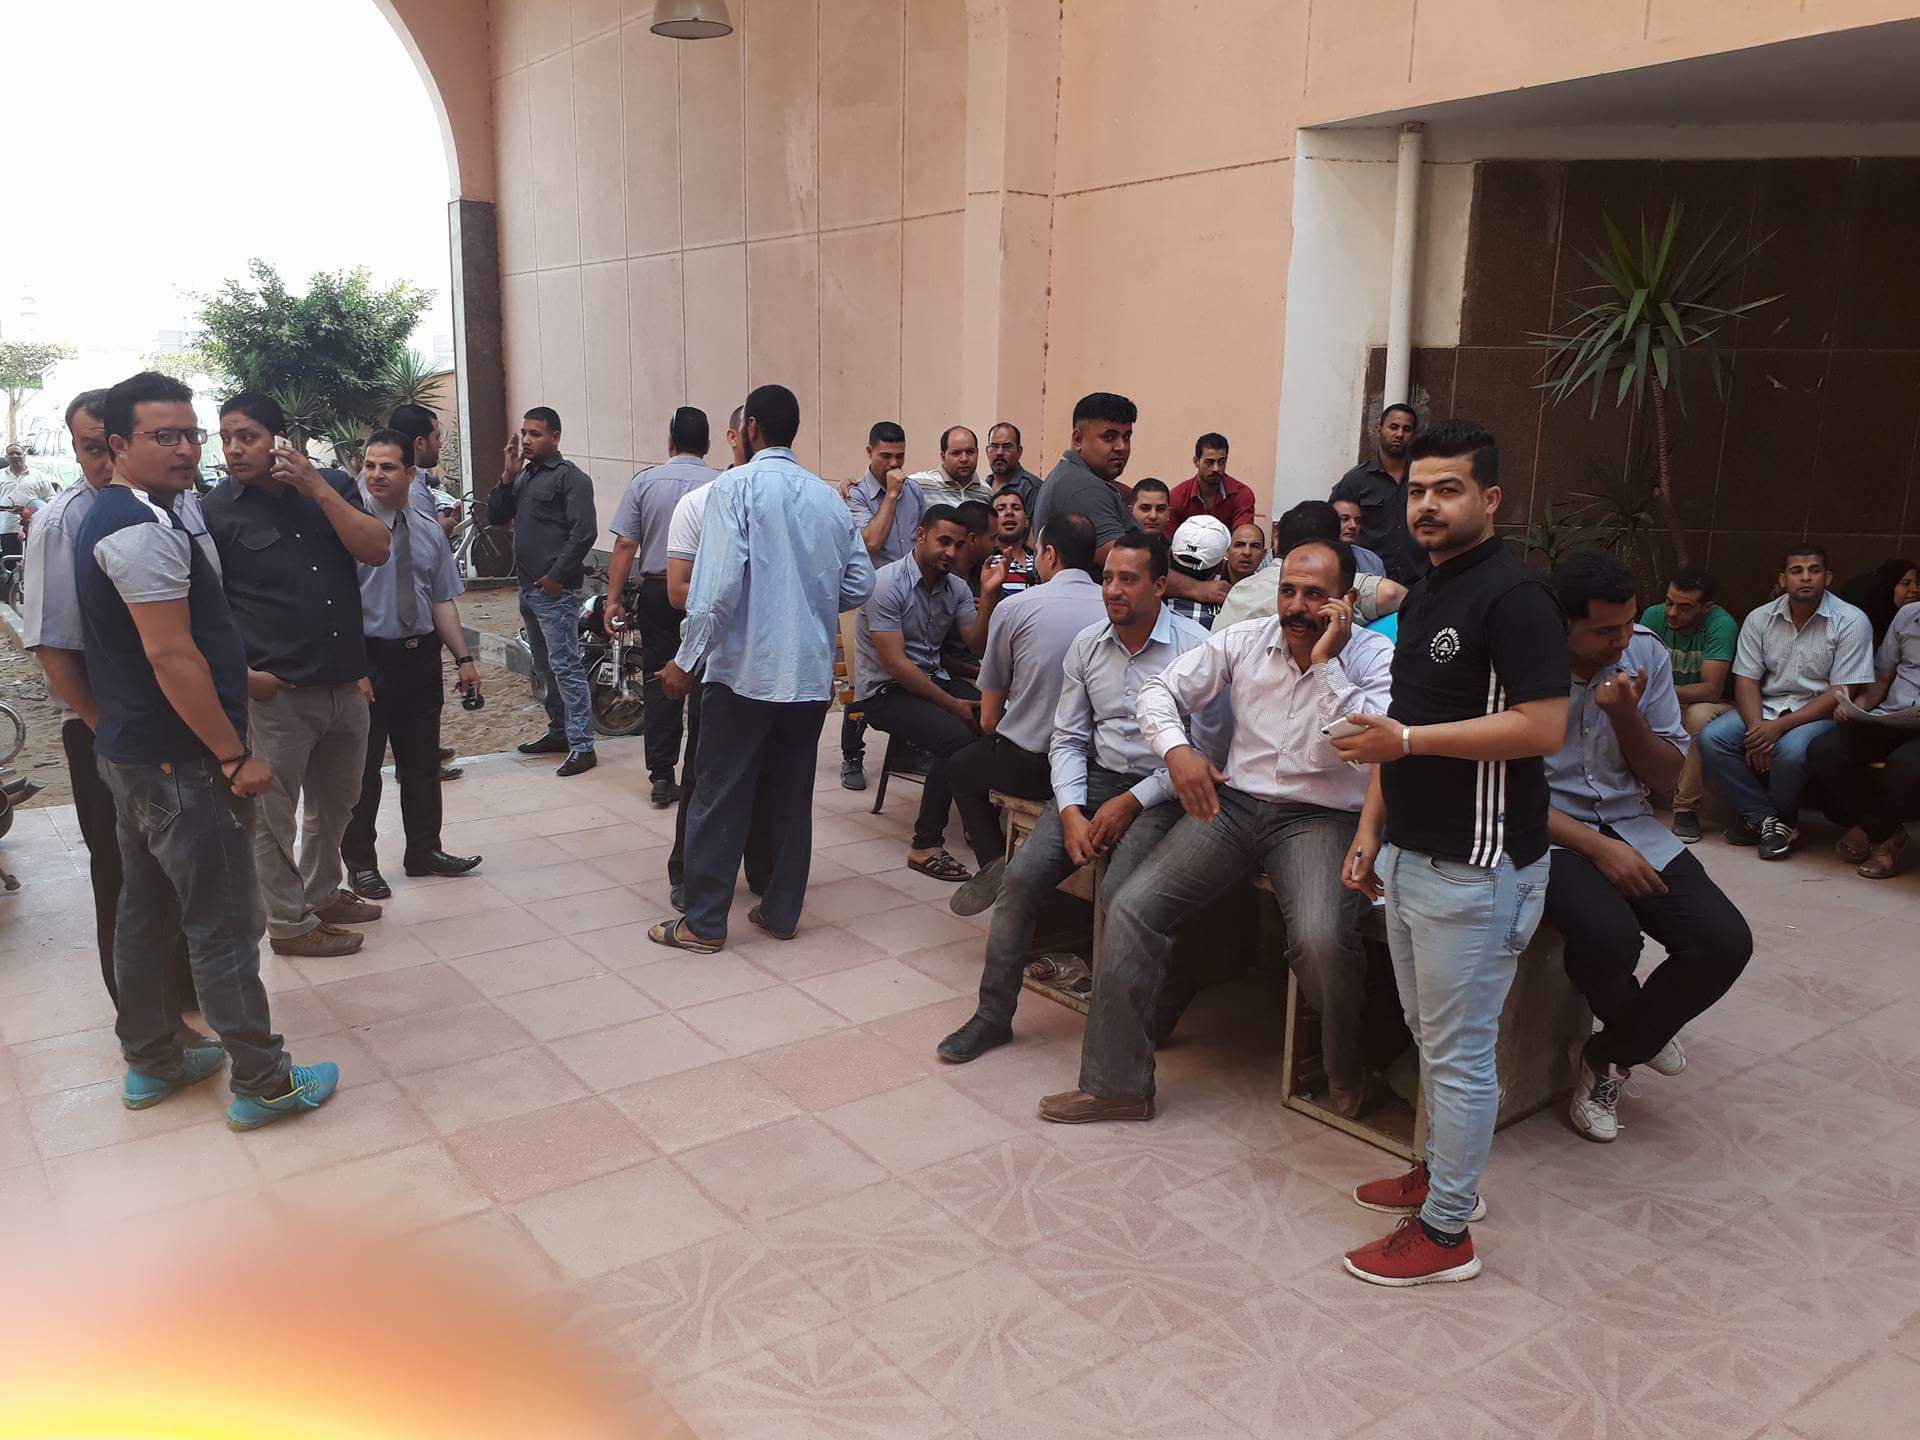 وقفة احتجاجية لأفراد أمن مستشفى جامعة المنوفية للمطالبة بتثبيتهم (1)